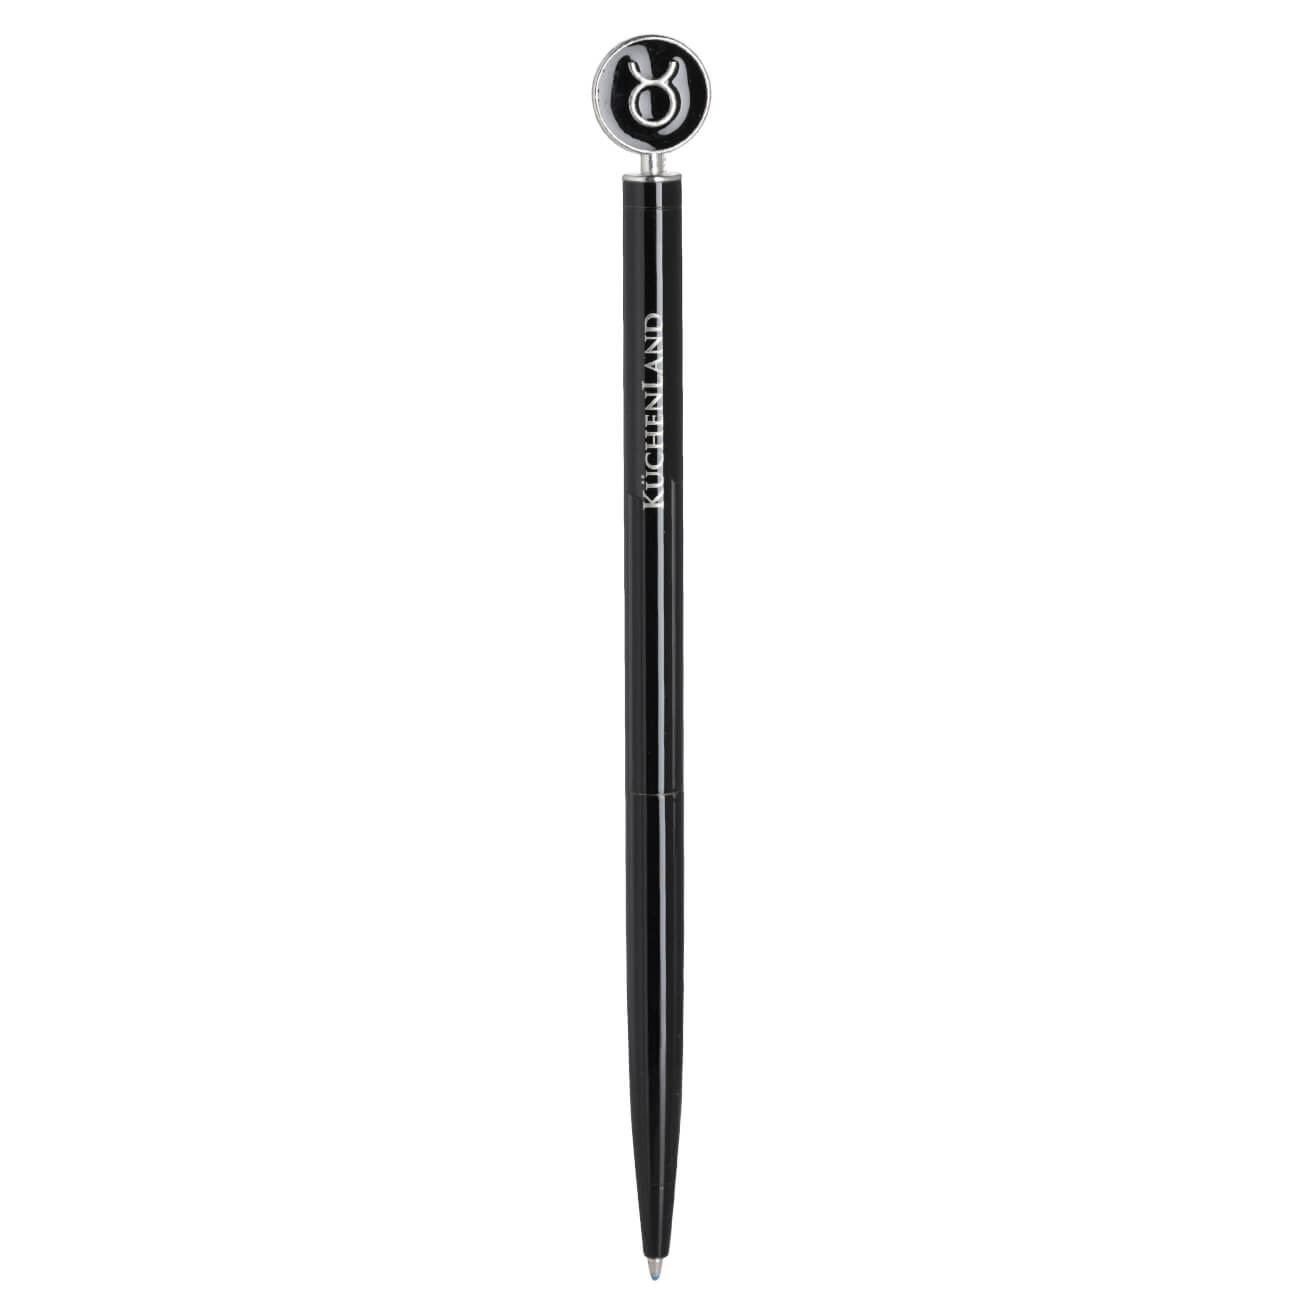 Ручка шариковая, 15 см, с фигуркой, сталь, черно-серебристая, Телец, Zodiac шариковая ручка hatber